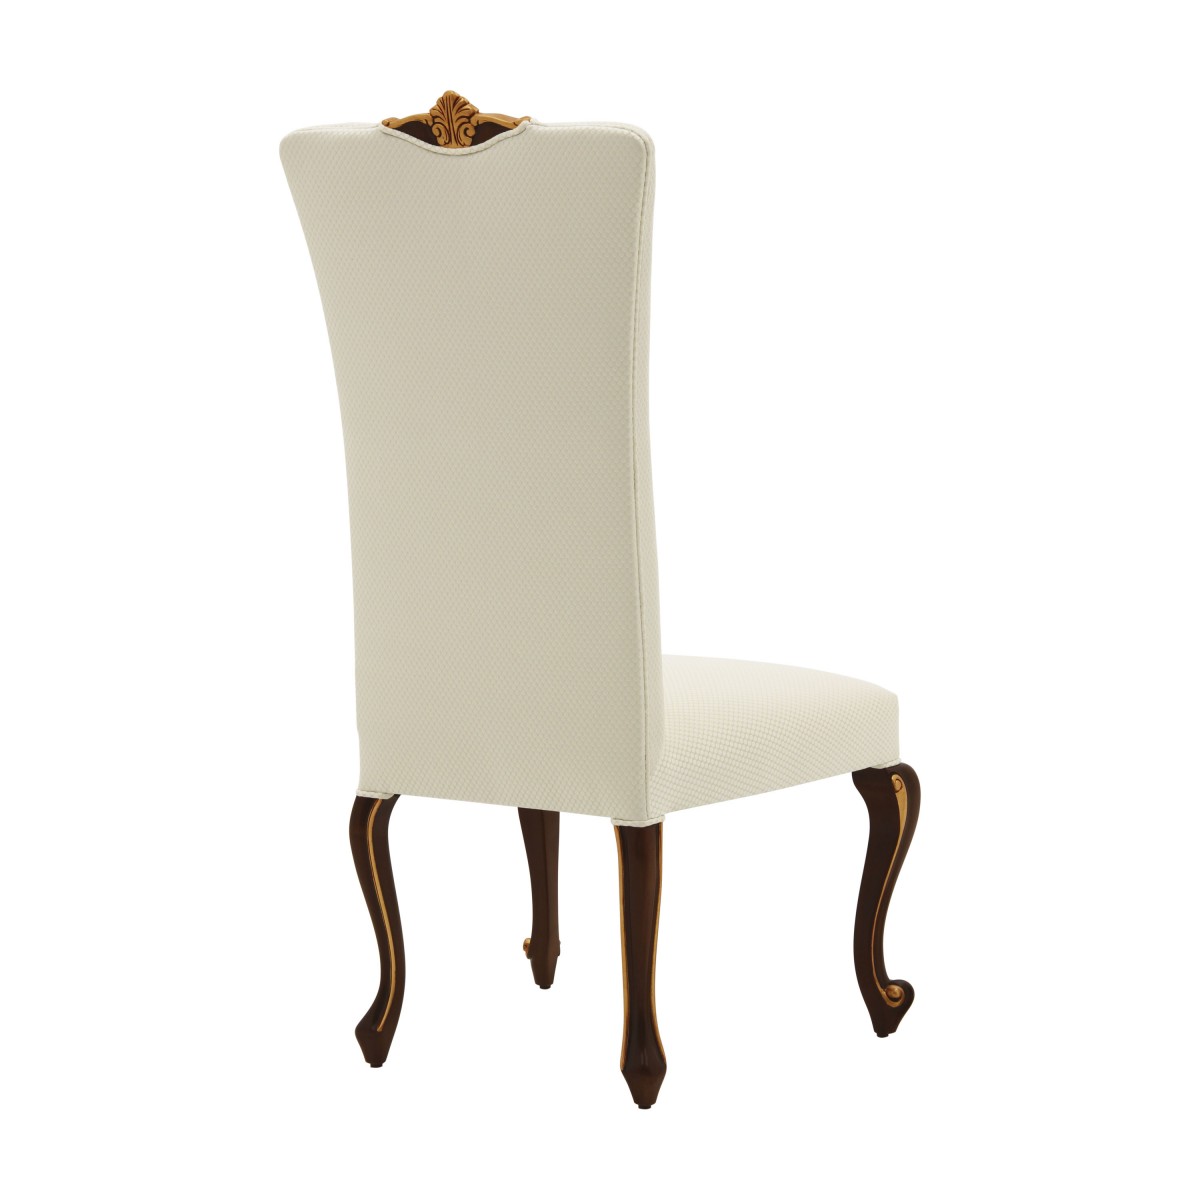 Chair Prince - Sevensedie